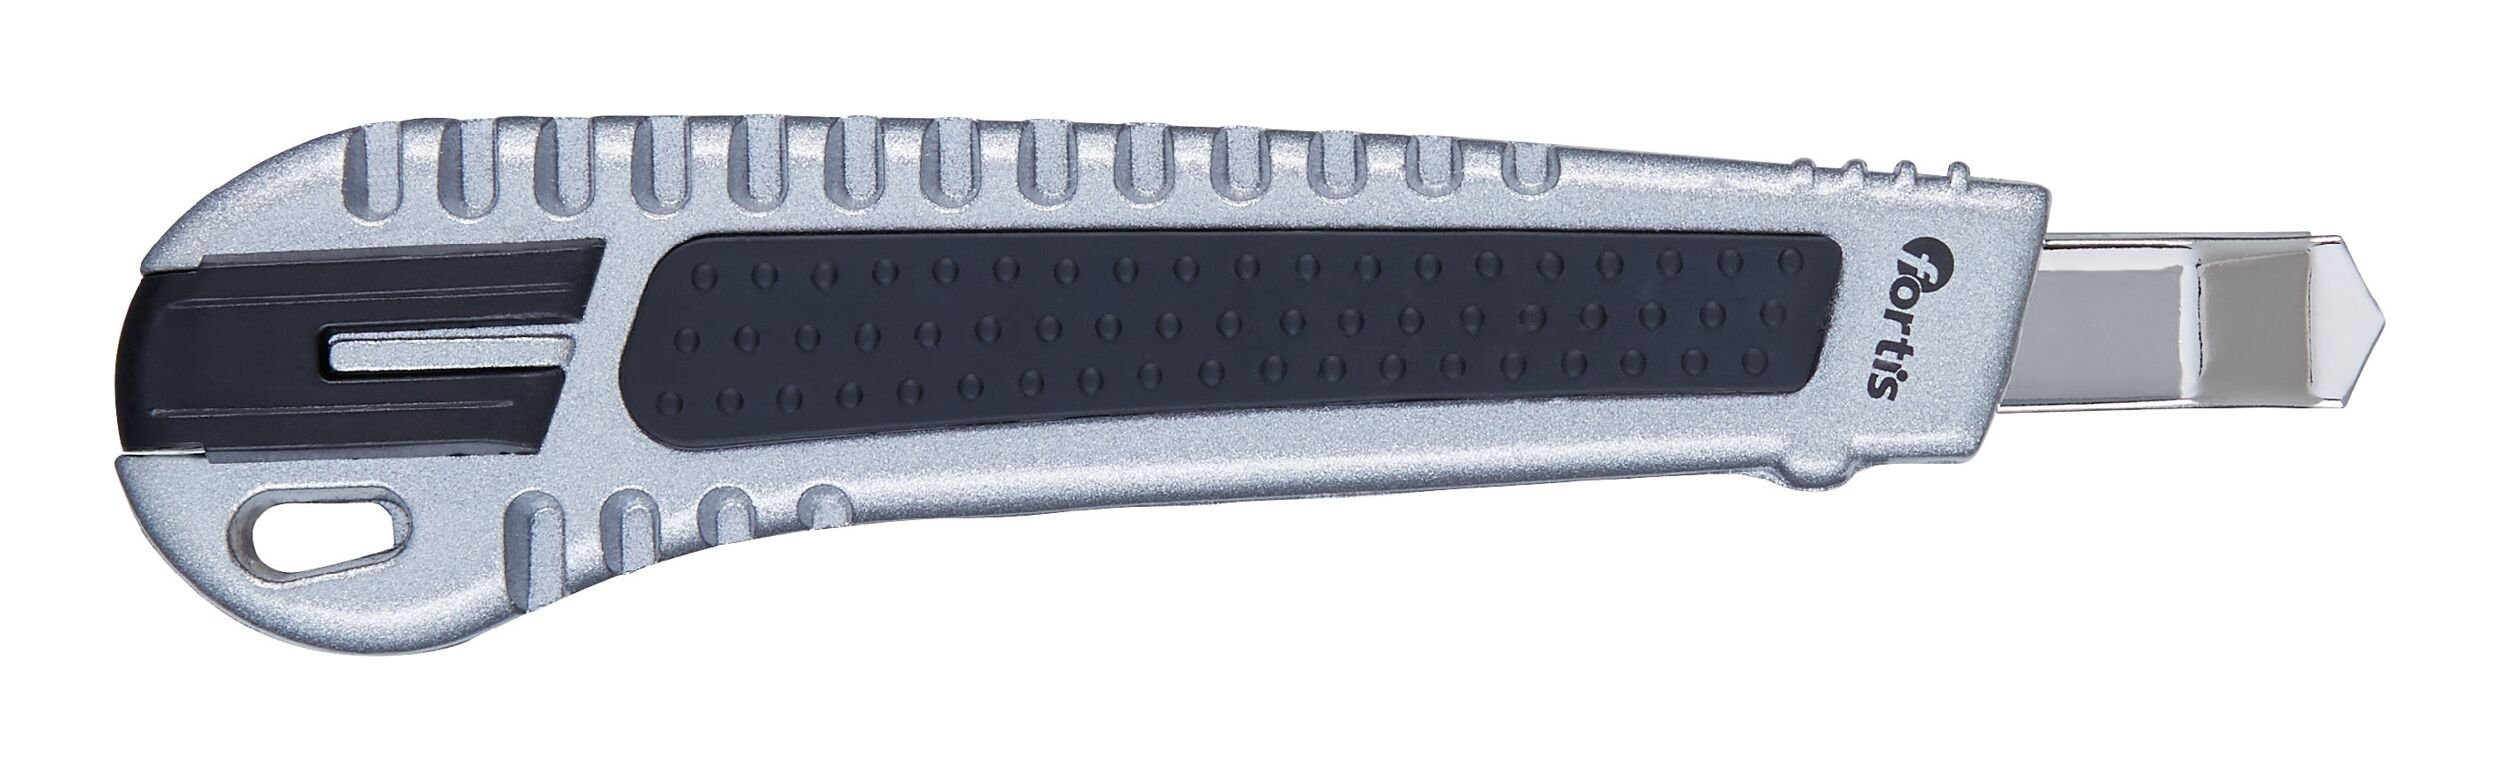 Cuttermesser mit 9 Cutter, fortis Klinge Metall mm 1